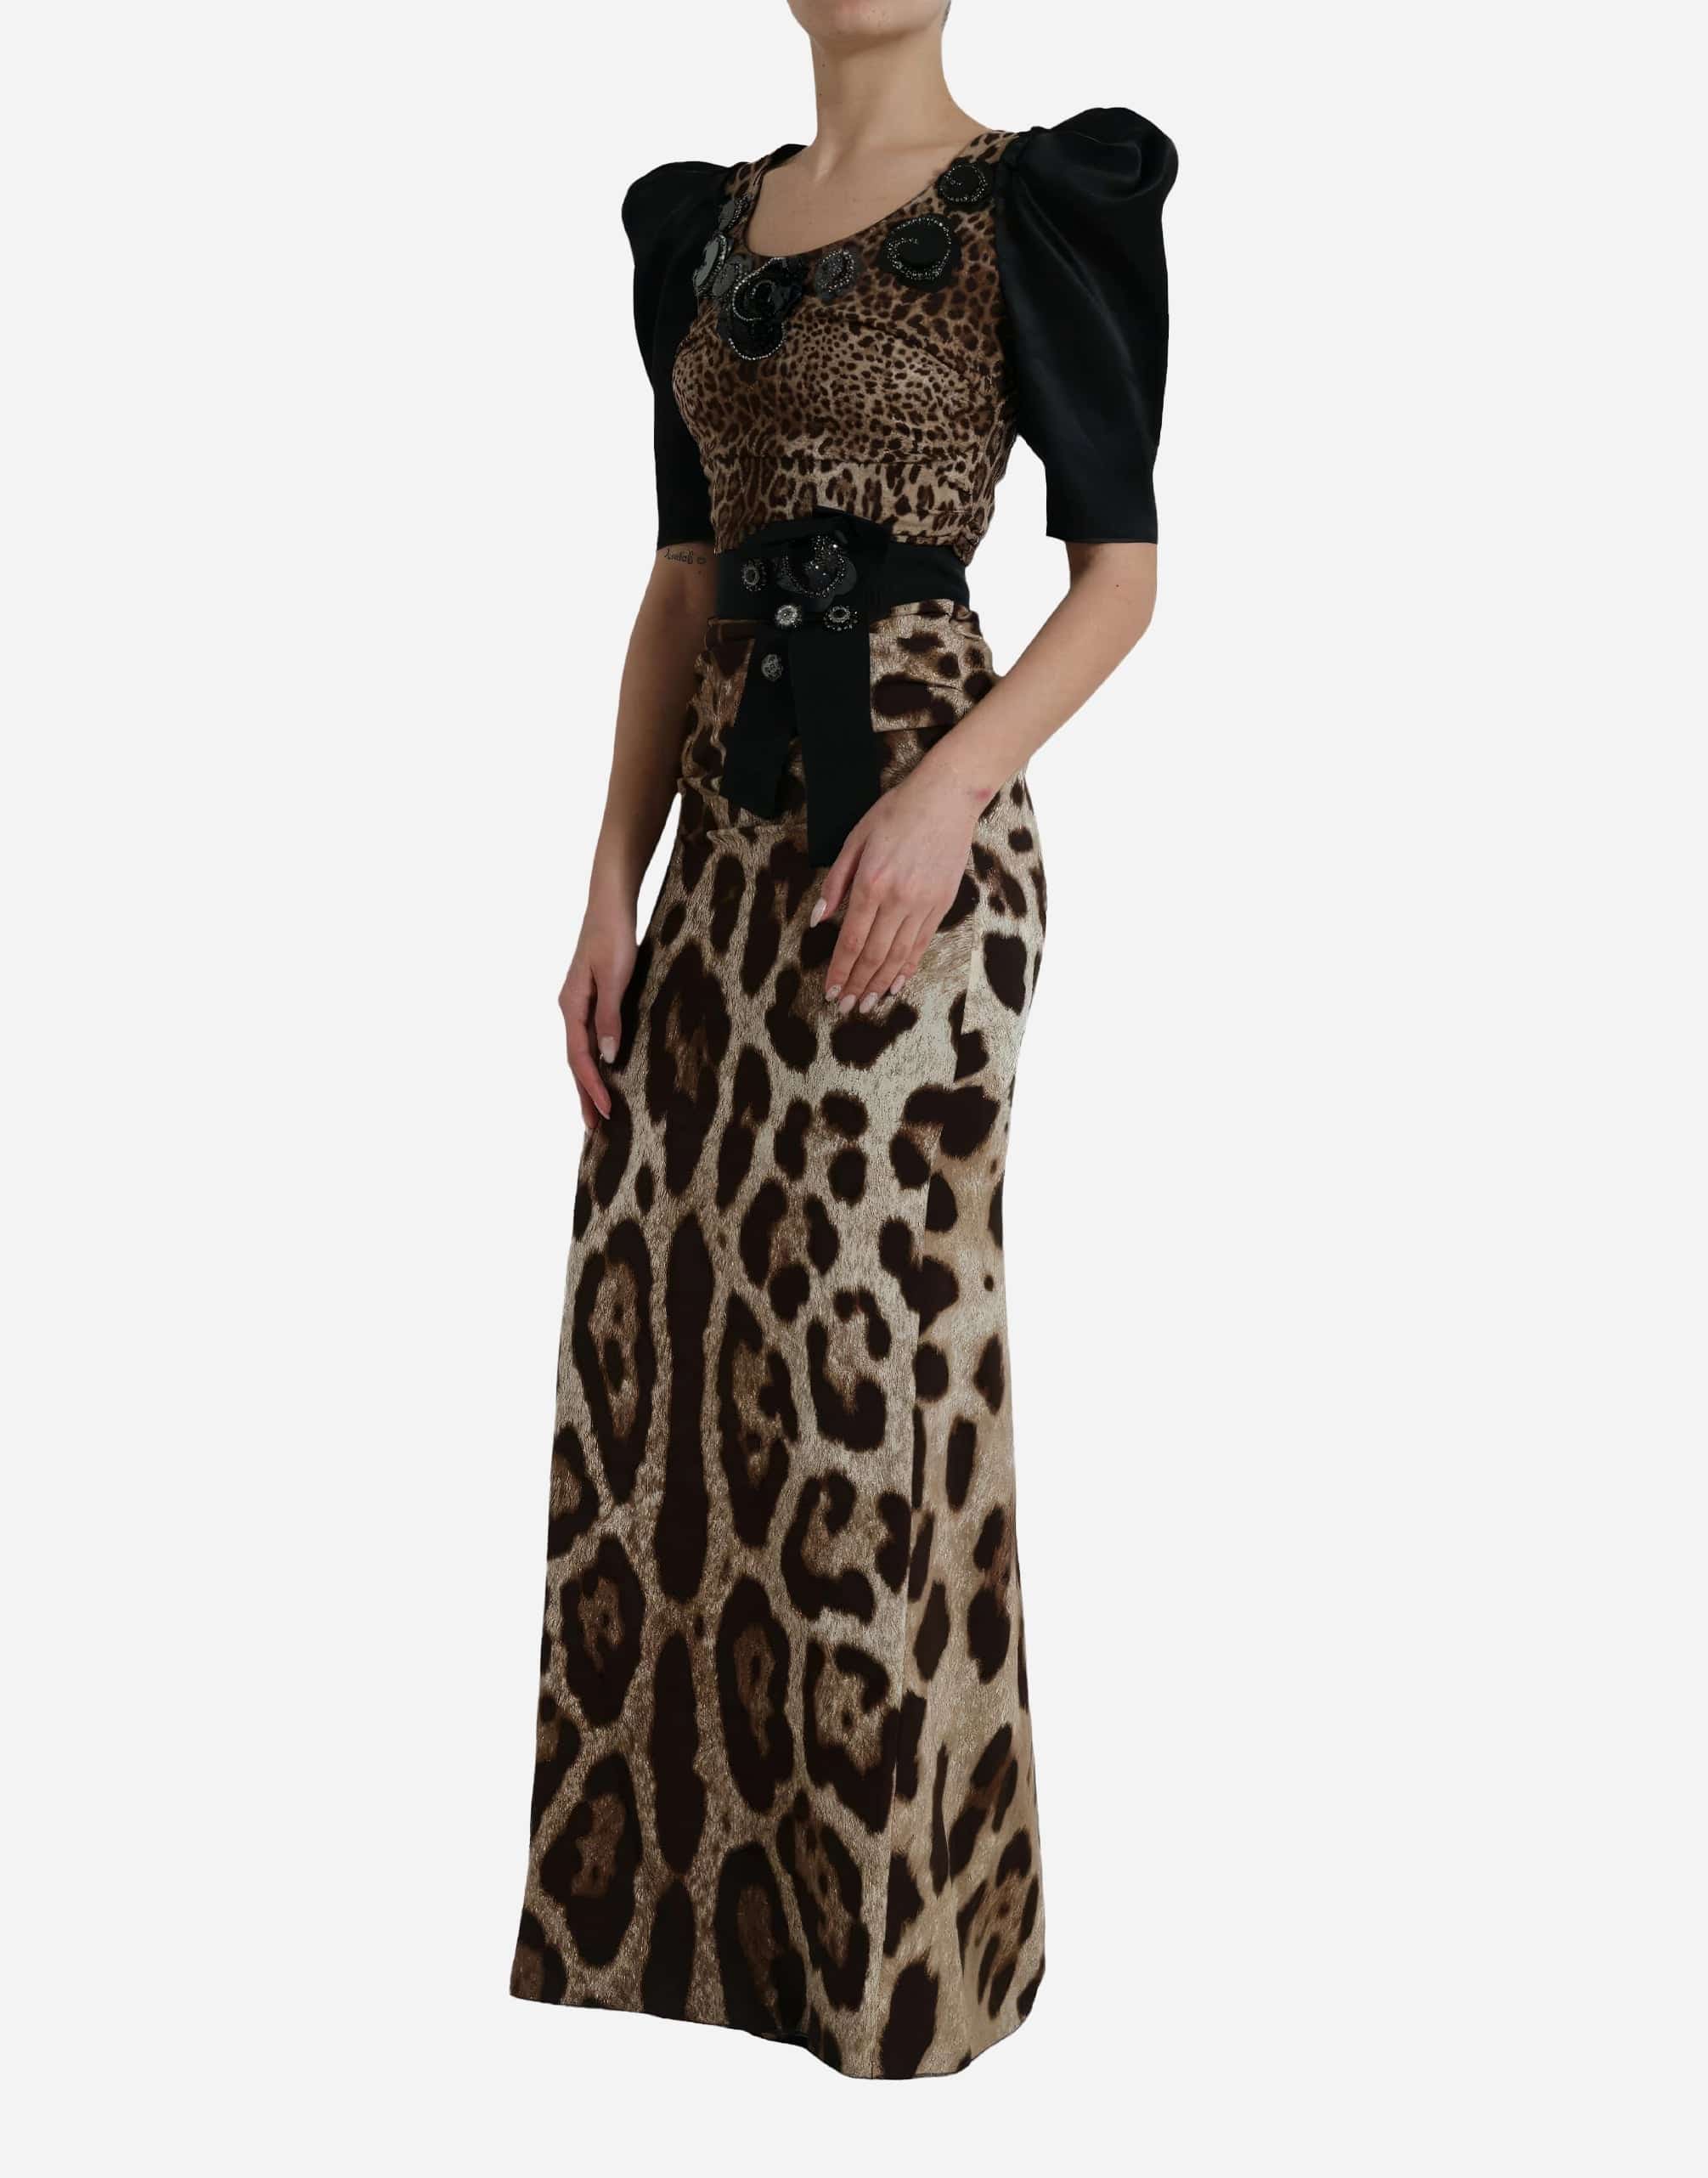 Aus Leopardenmuster verziertes Kleider mit ausgestatteten Schultern